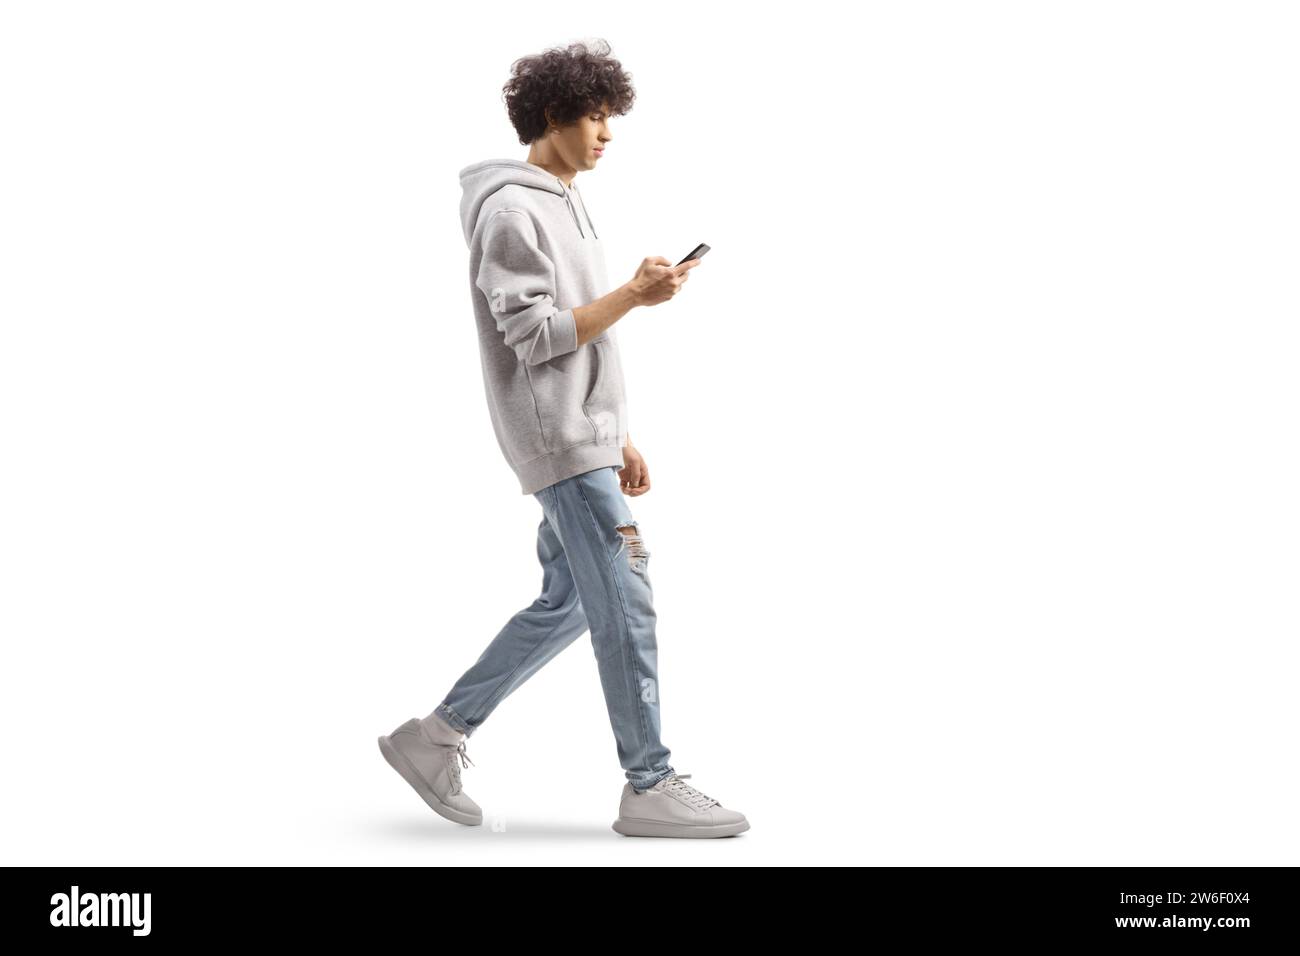 Photo de profil pleine longueur d'un gars de gen z portant un sweat à capuche gris et marchant avec un smartphone isolé sur fond blanc Banque D'Images